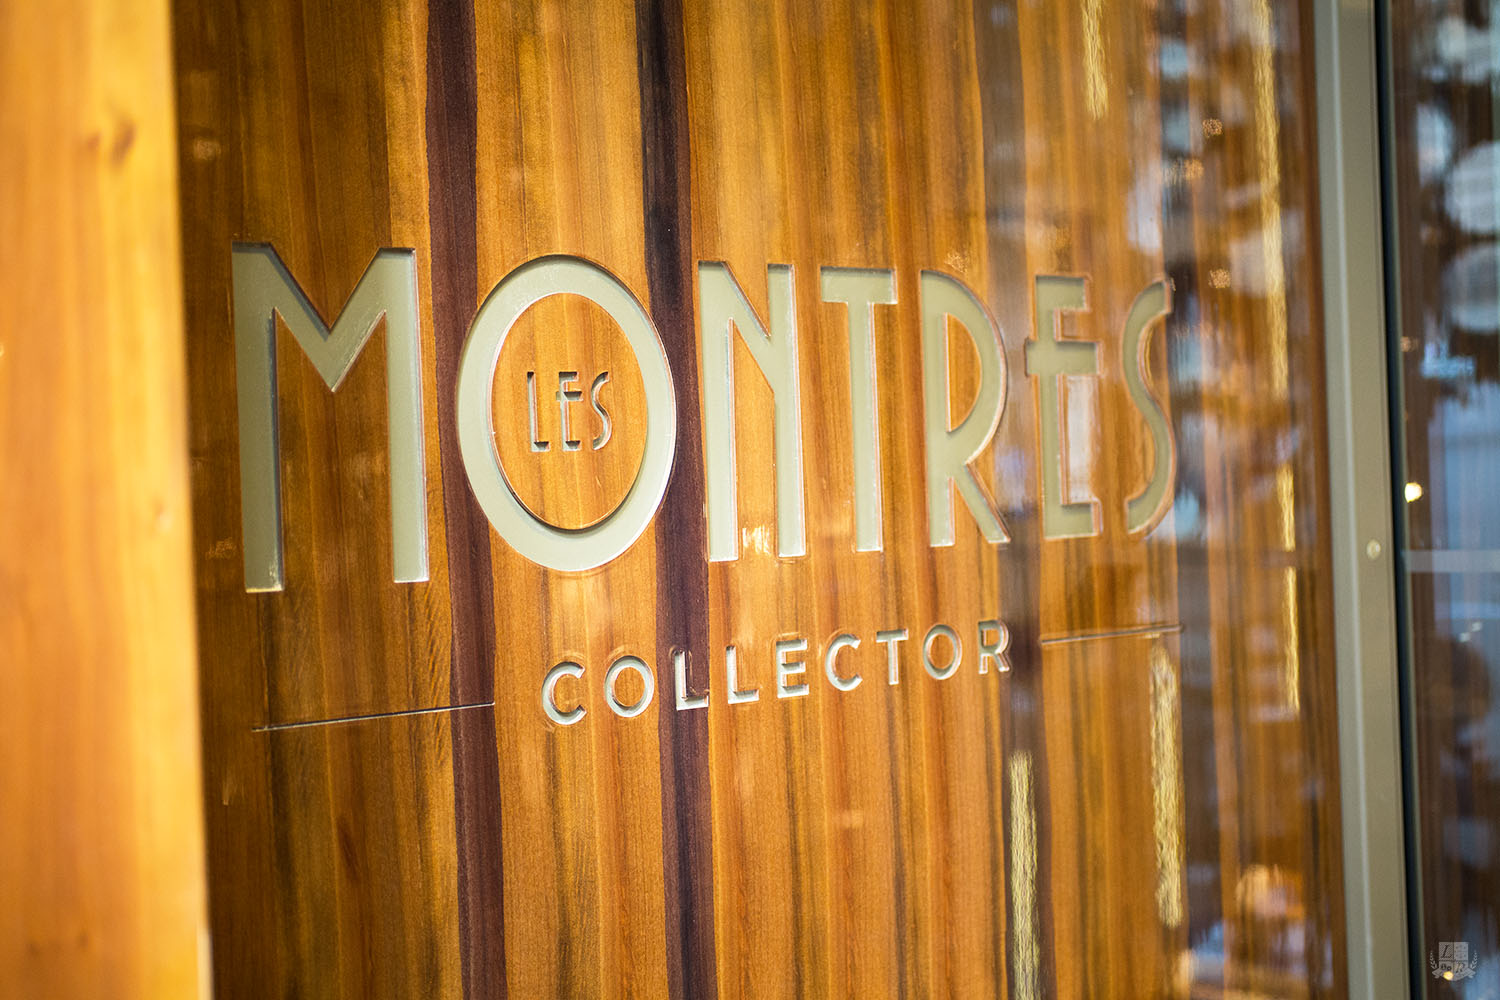 Les Montres Collector - Paris